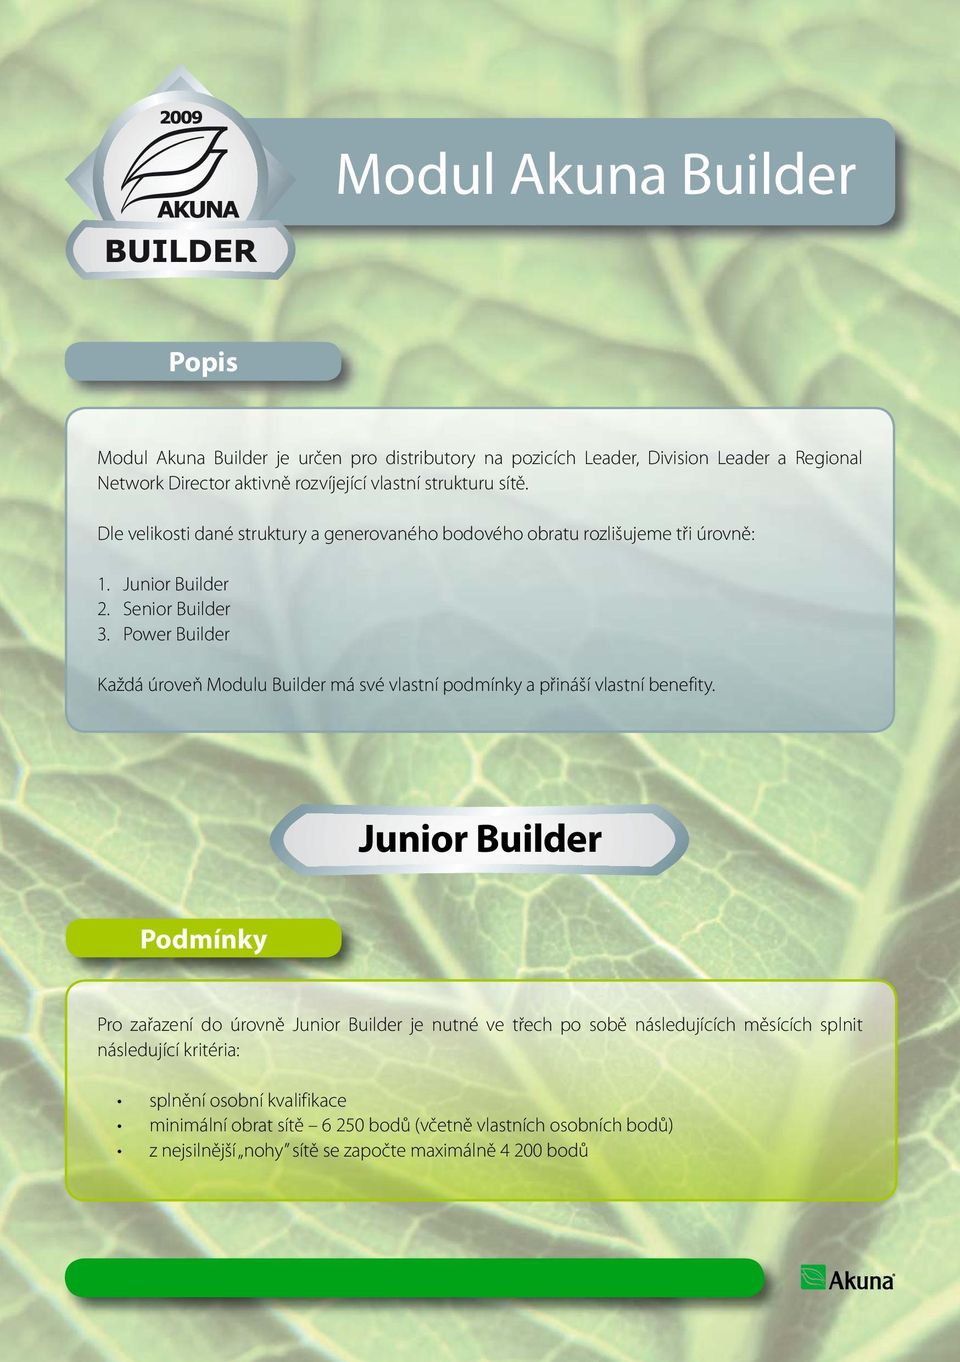 Power Builder Každá úroveň Modulu Builder má své vlastní podmínky a přináší vlastní benefity.